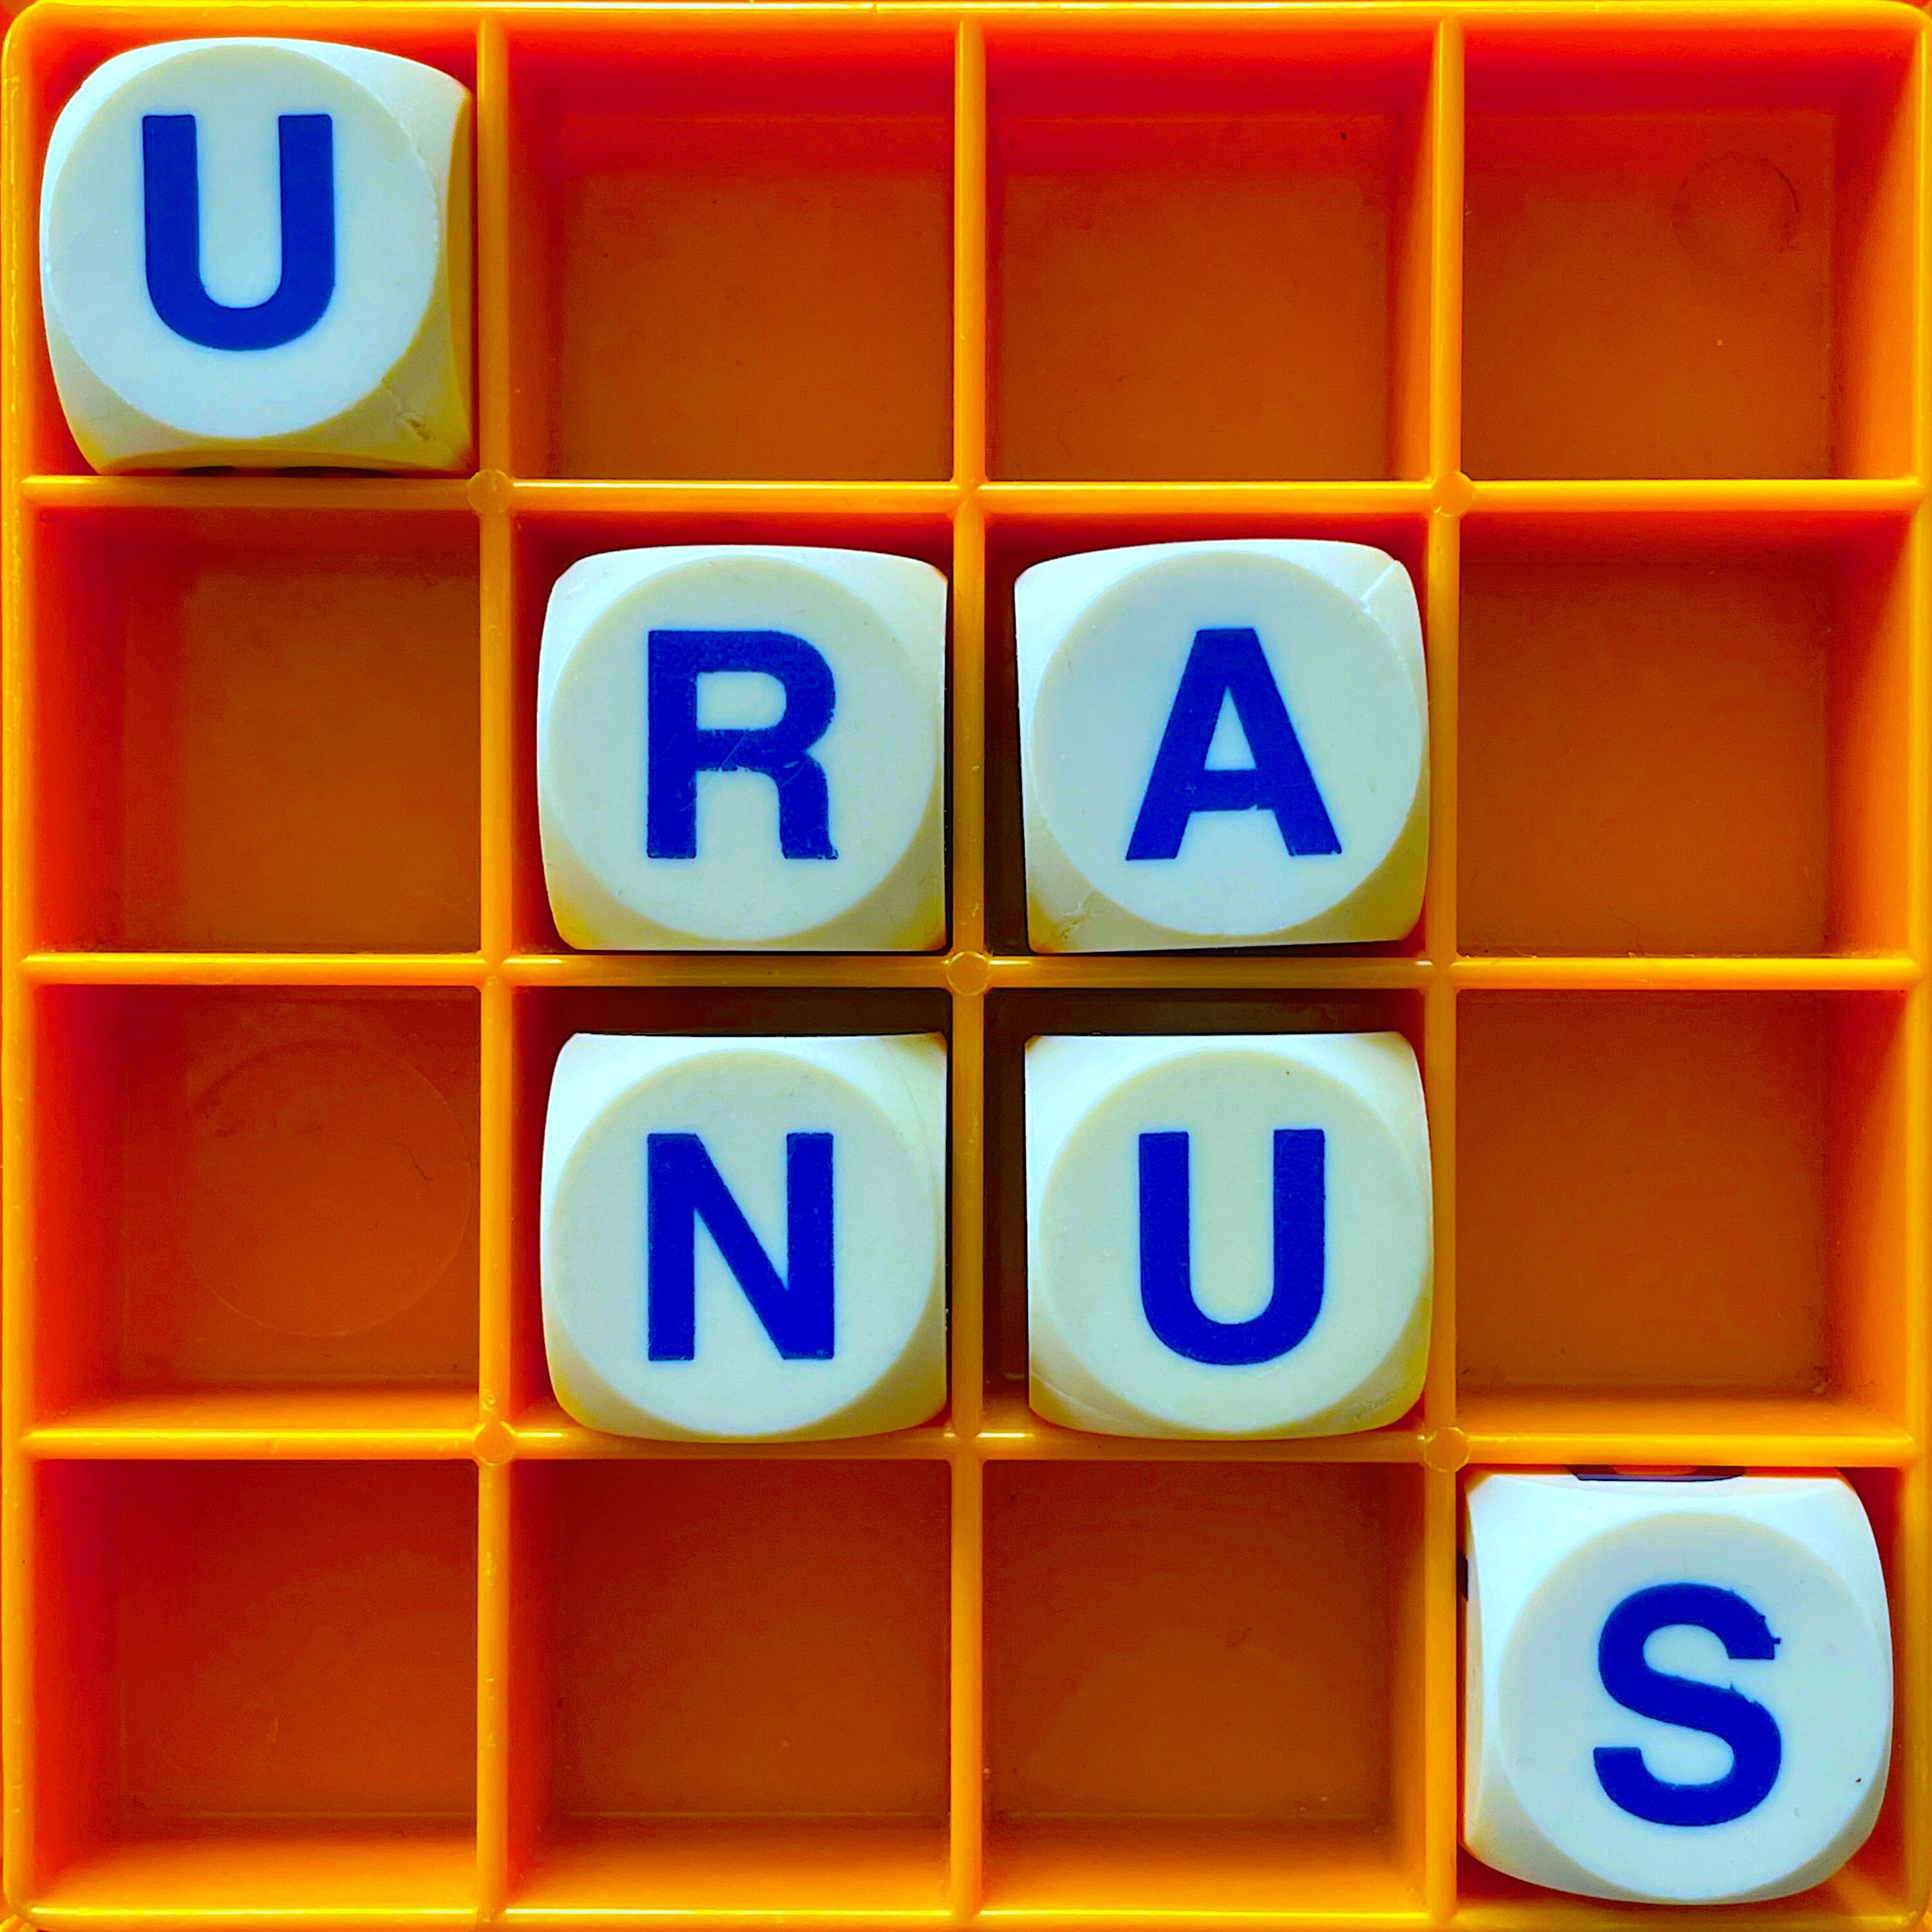 Thumbnail for "178. Uranus".